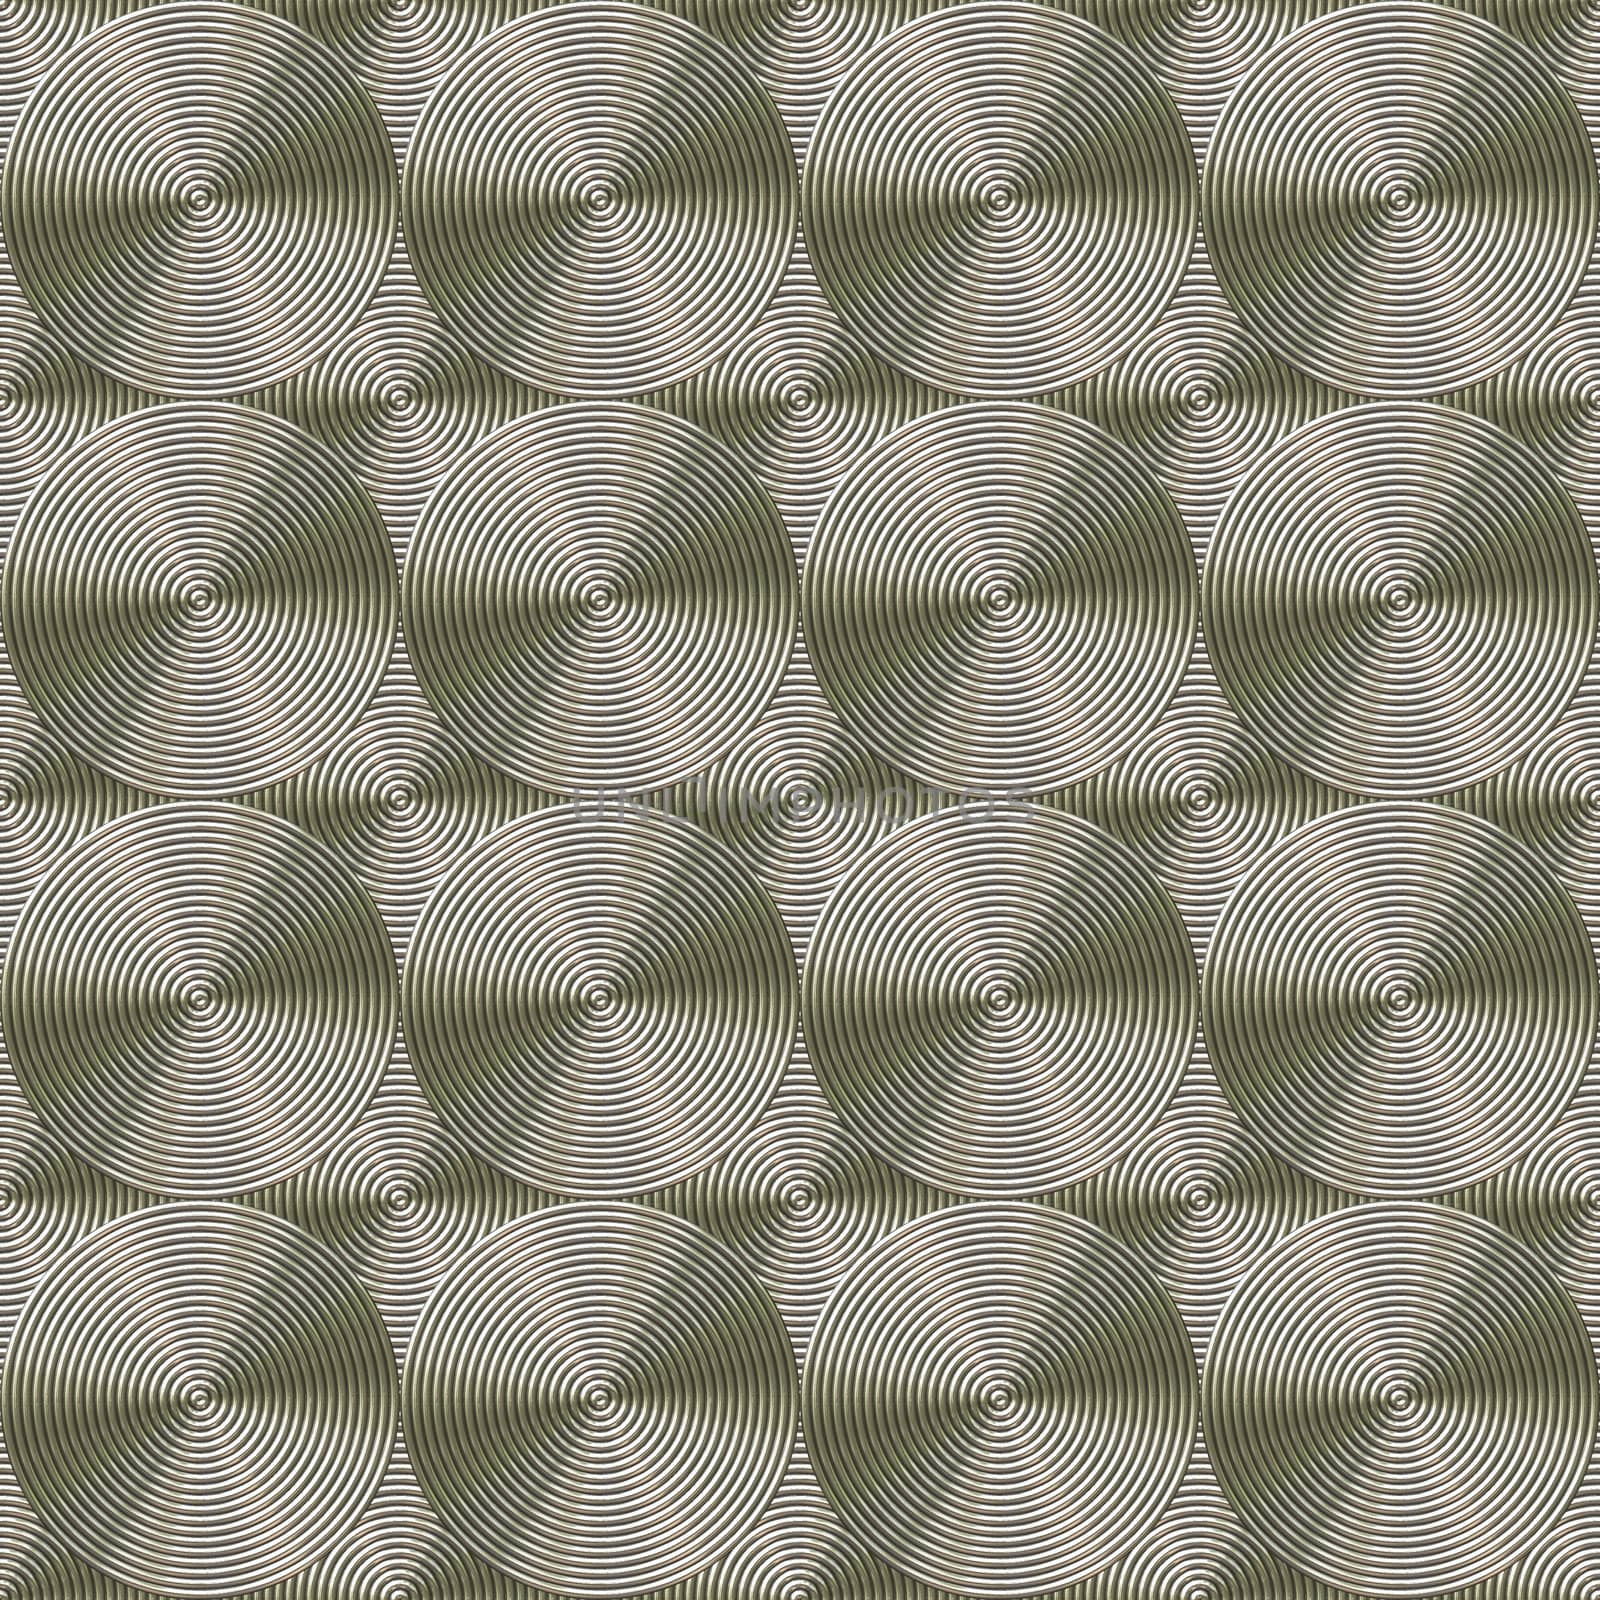 golden metallic rolls background, tiles seamless as a pattern